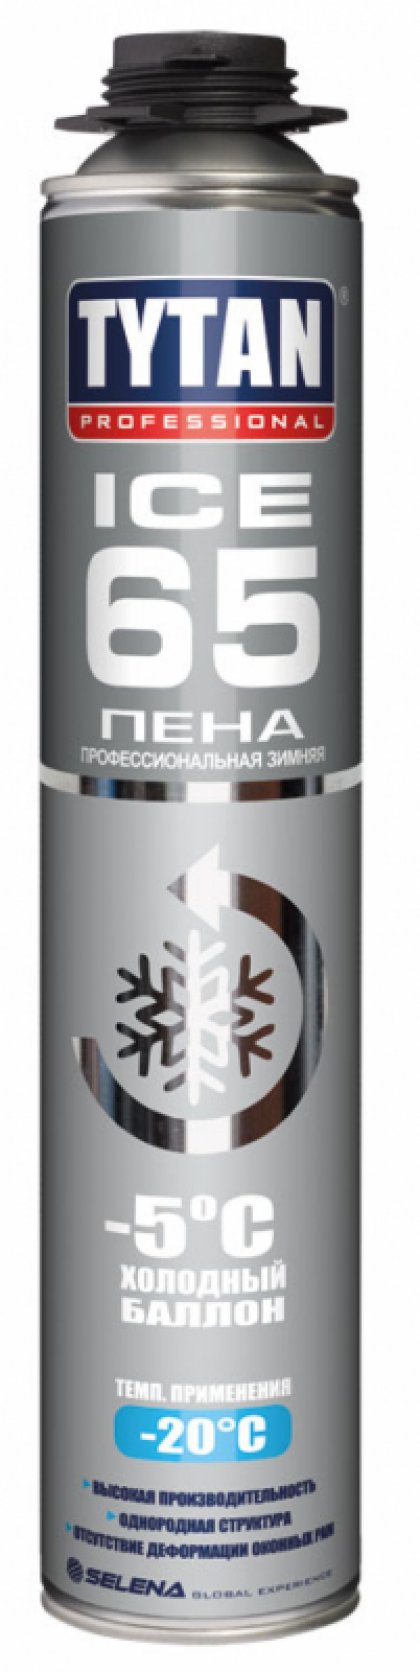 Tytan Professional 65 ICE пена профессиональная зимняя, холодный баллон -5°С